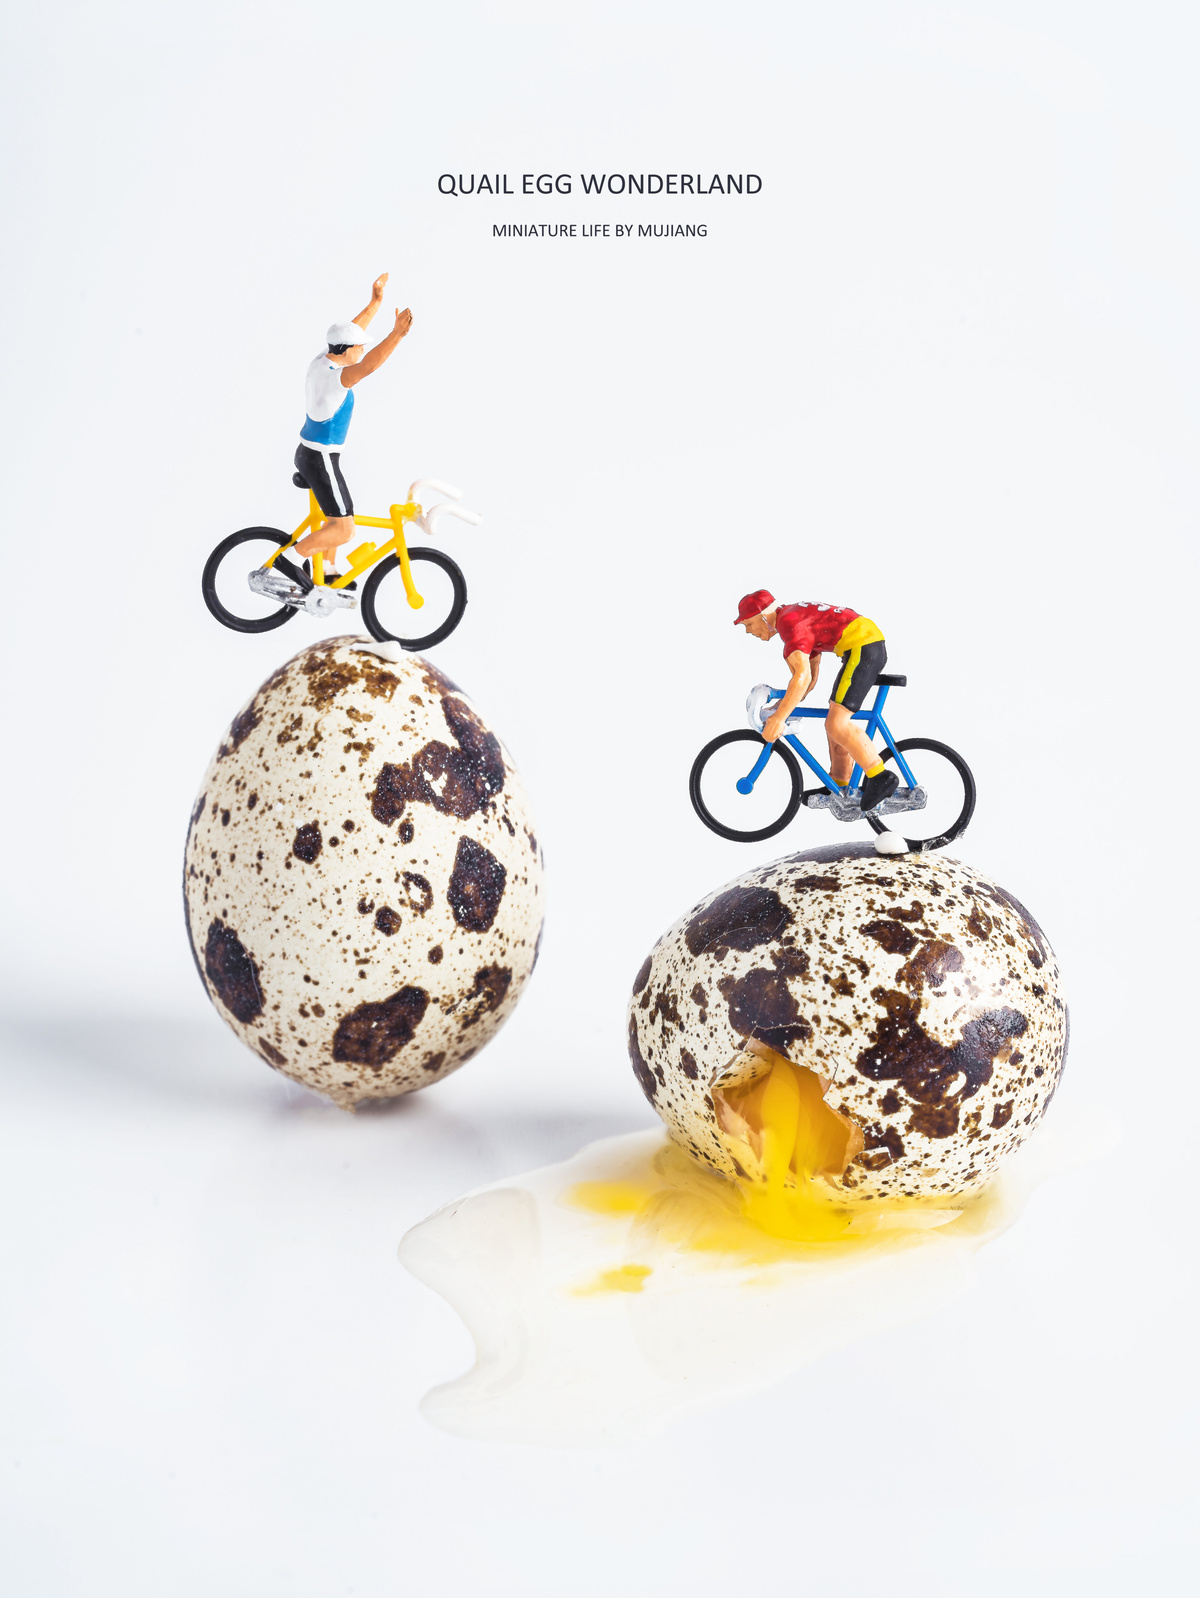 一个骑在类似于自行车的蛋形物体上的男人广告